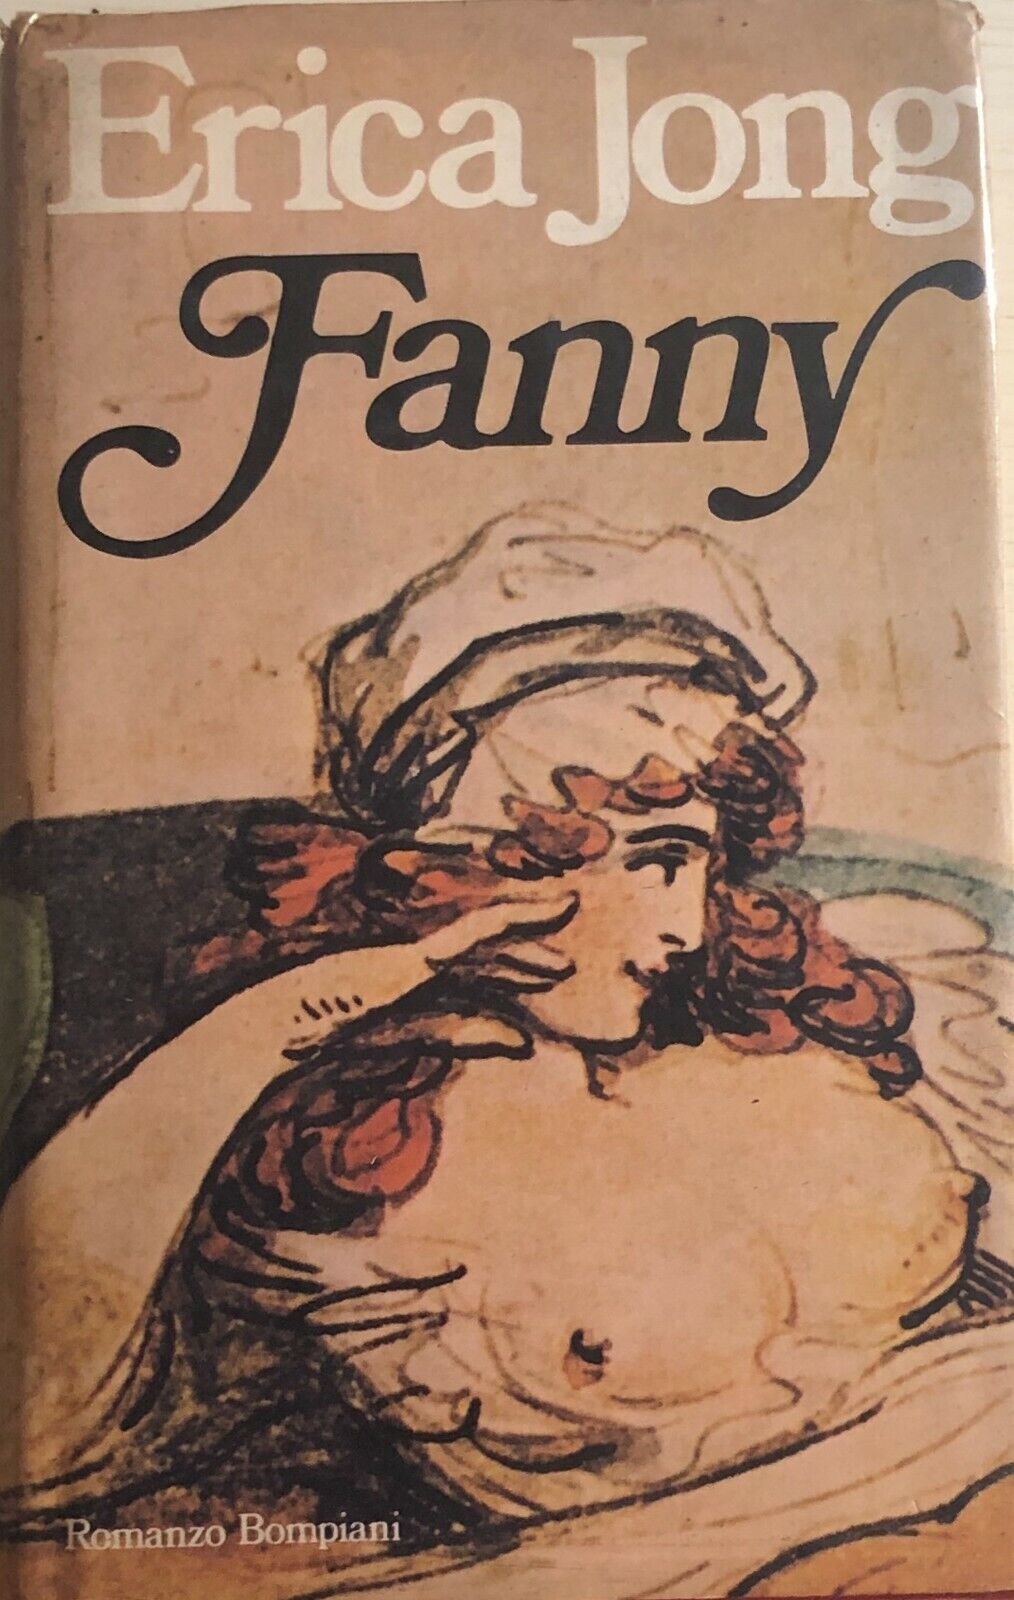 Fanny di Erica Jong, 1980, Bompiani